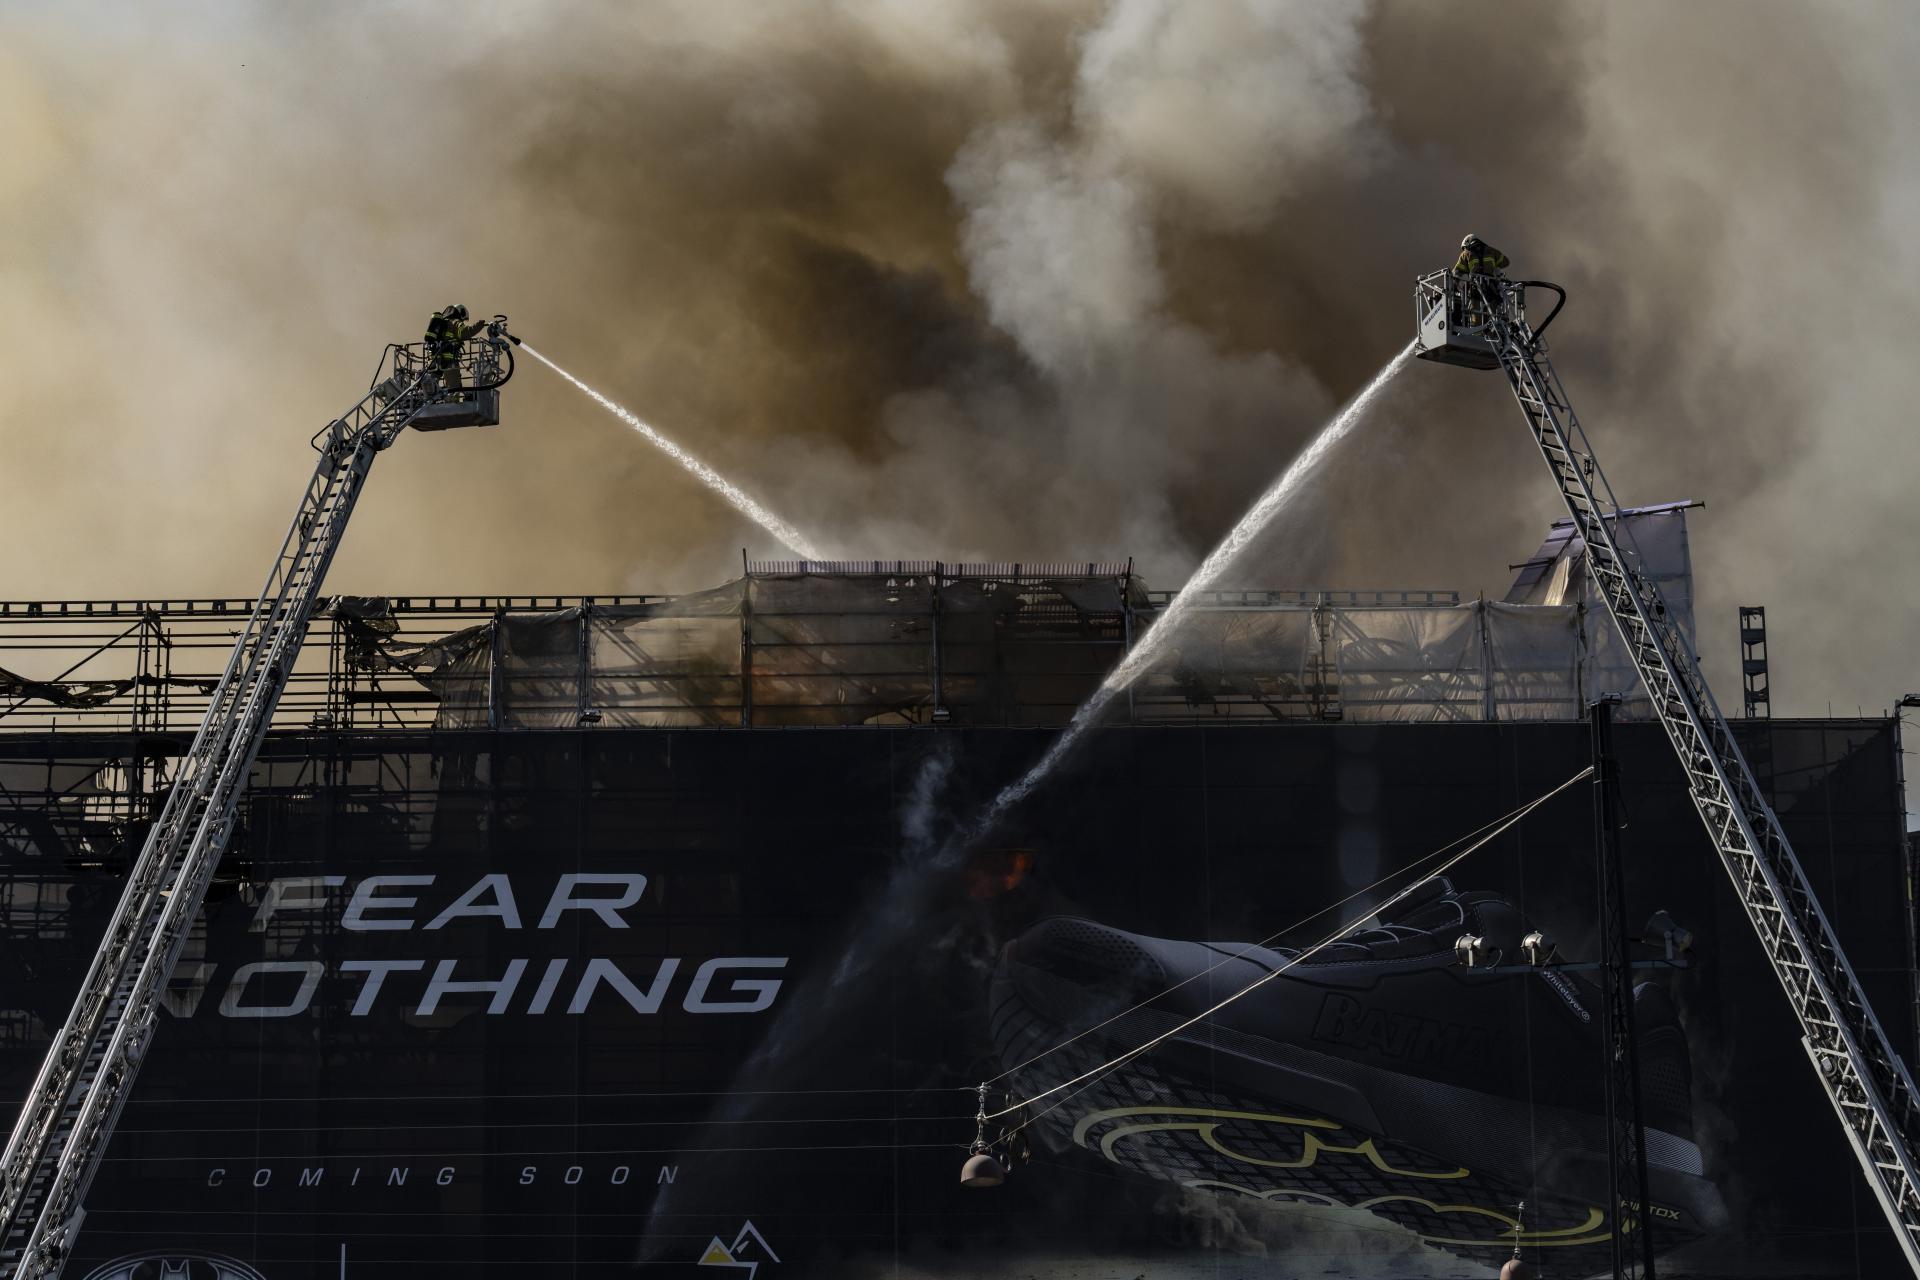 Hasiči naďalej bojujú s požiarom historickej budovy kodanskej burzy. Hasiť ho budú zrejme ešte 24 hodín